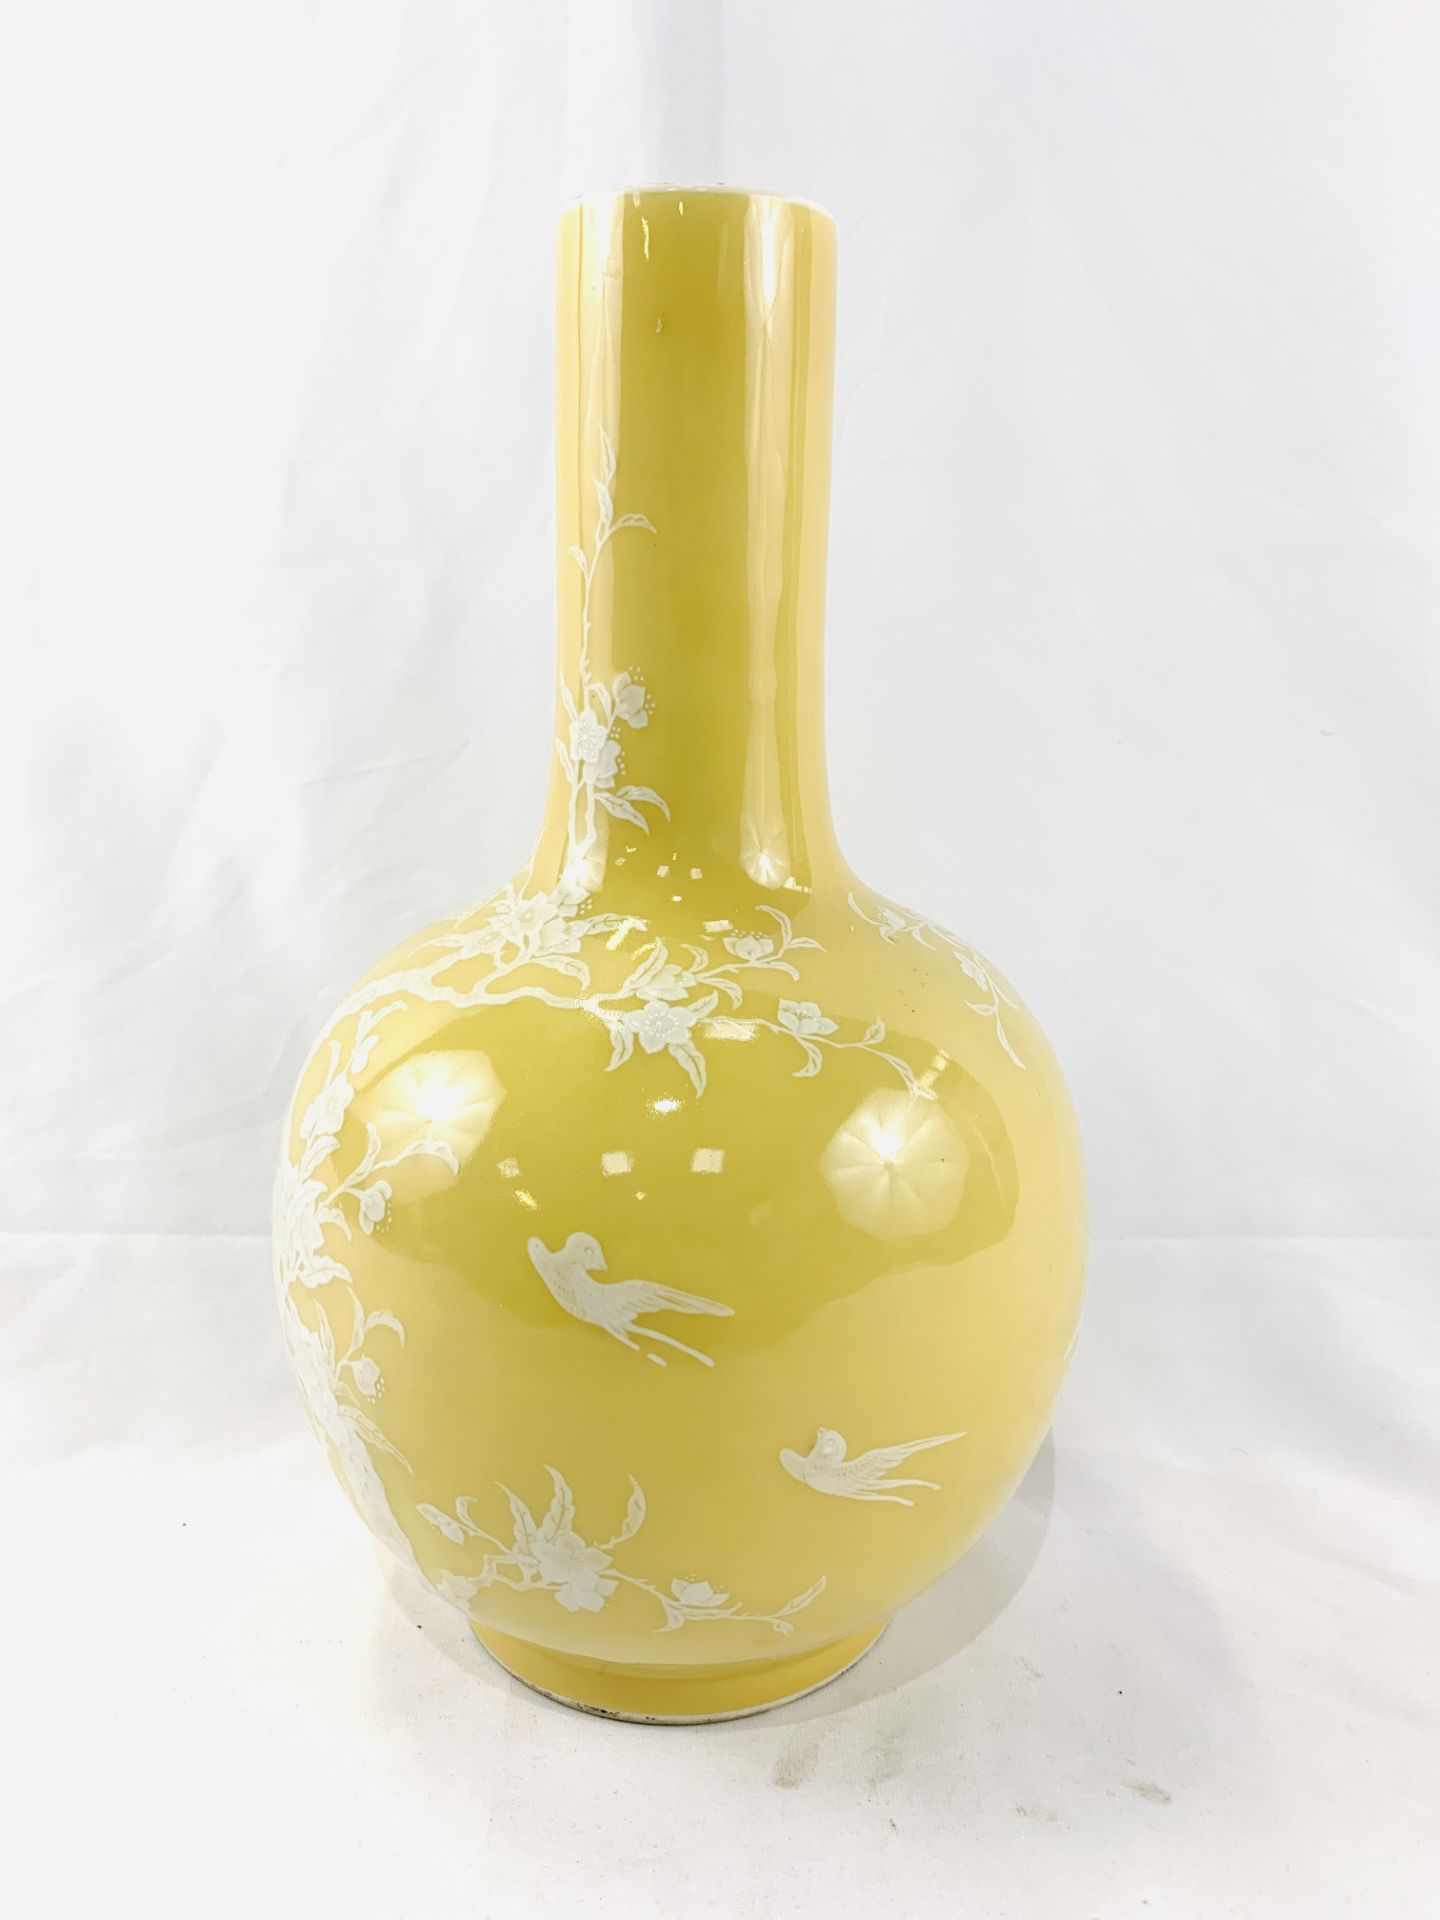 Yellow globe shaped vase - Image 4 of 6